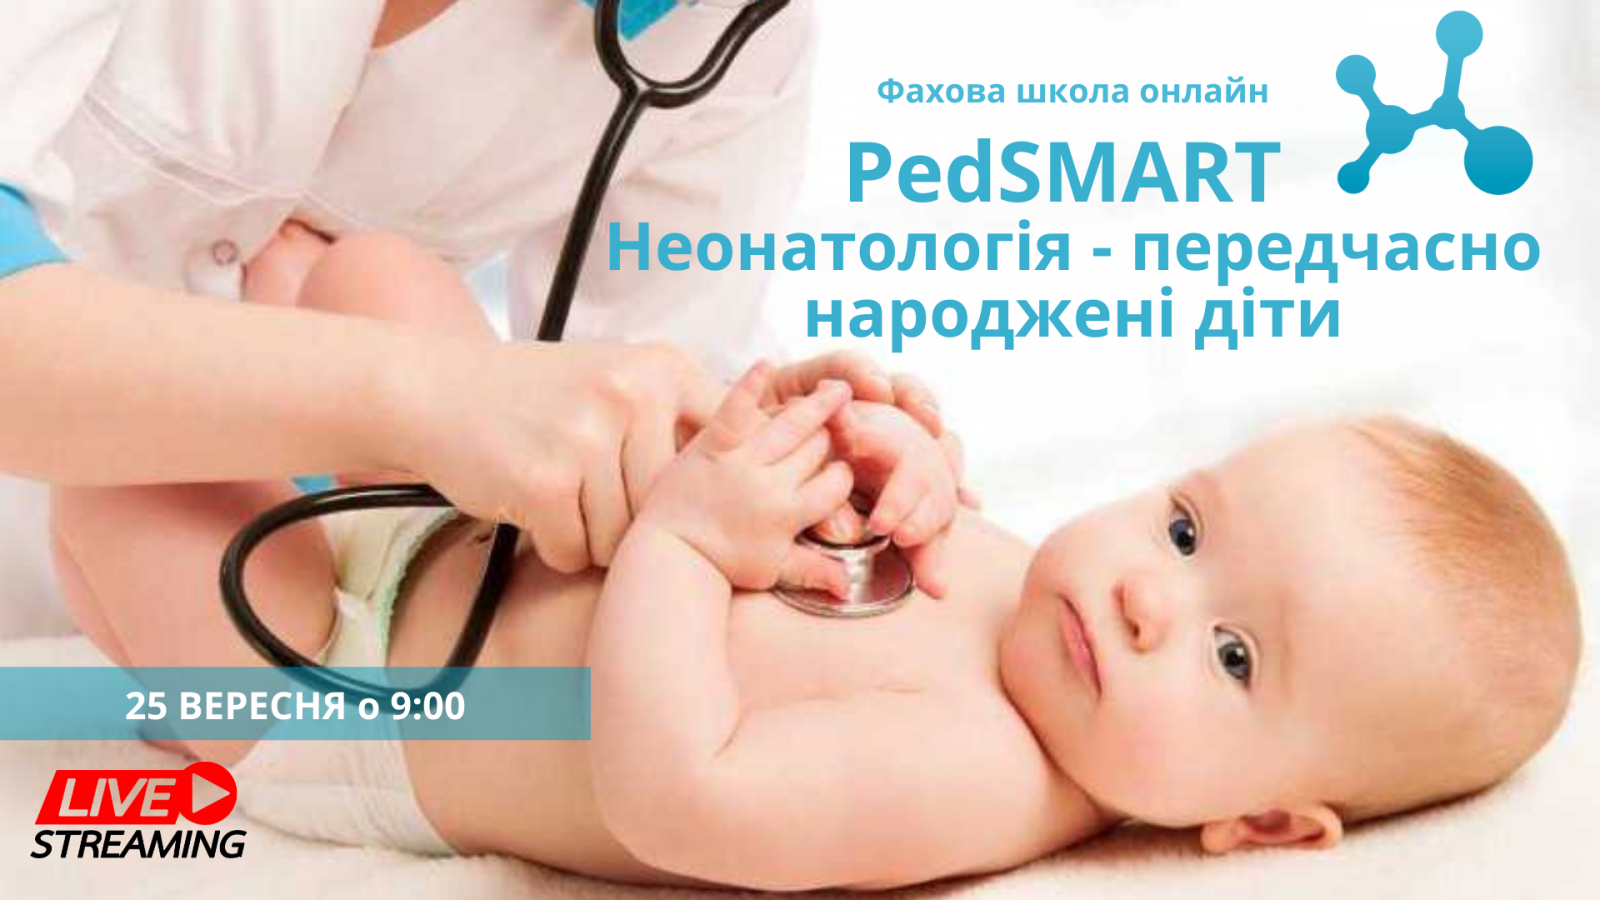 PedSMART «Неонатологія – передчасно народжені діти»